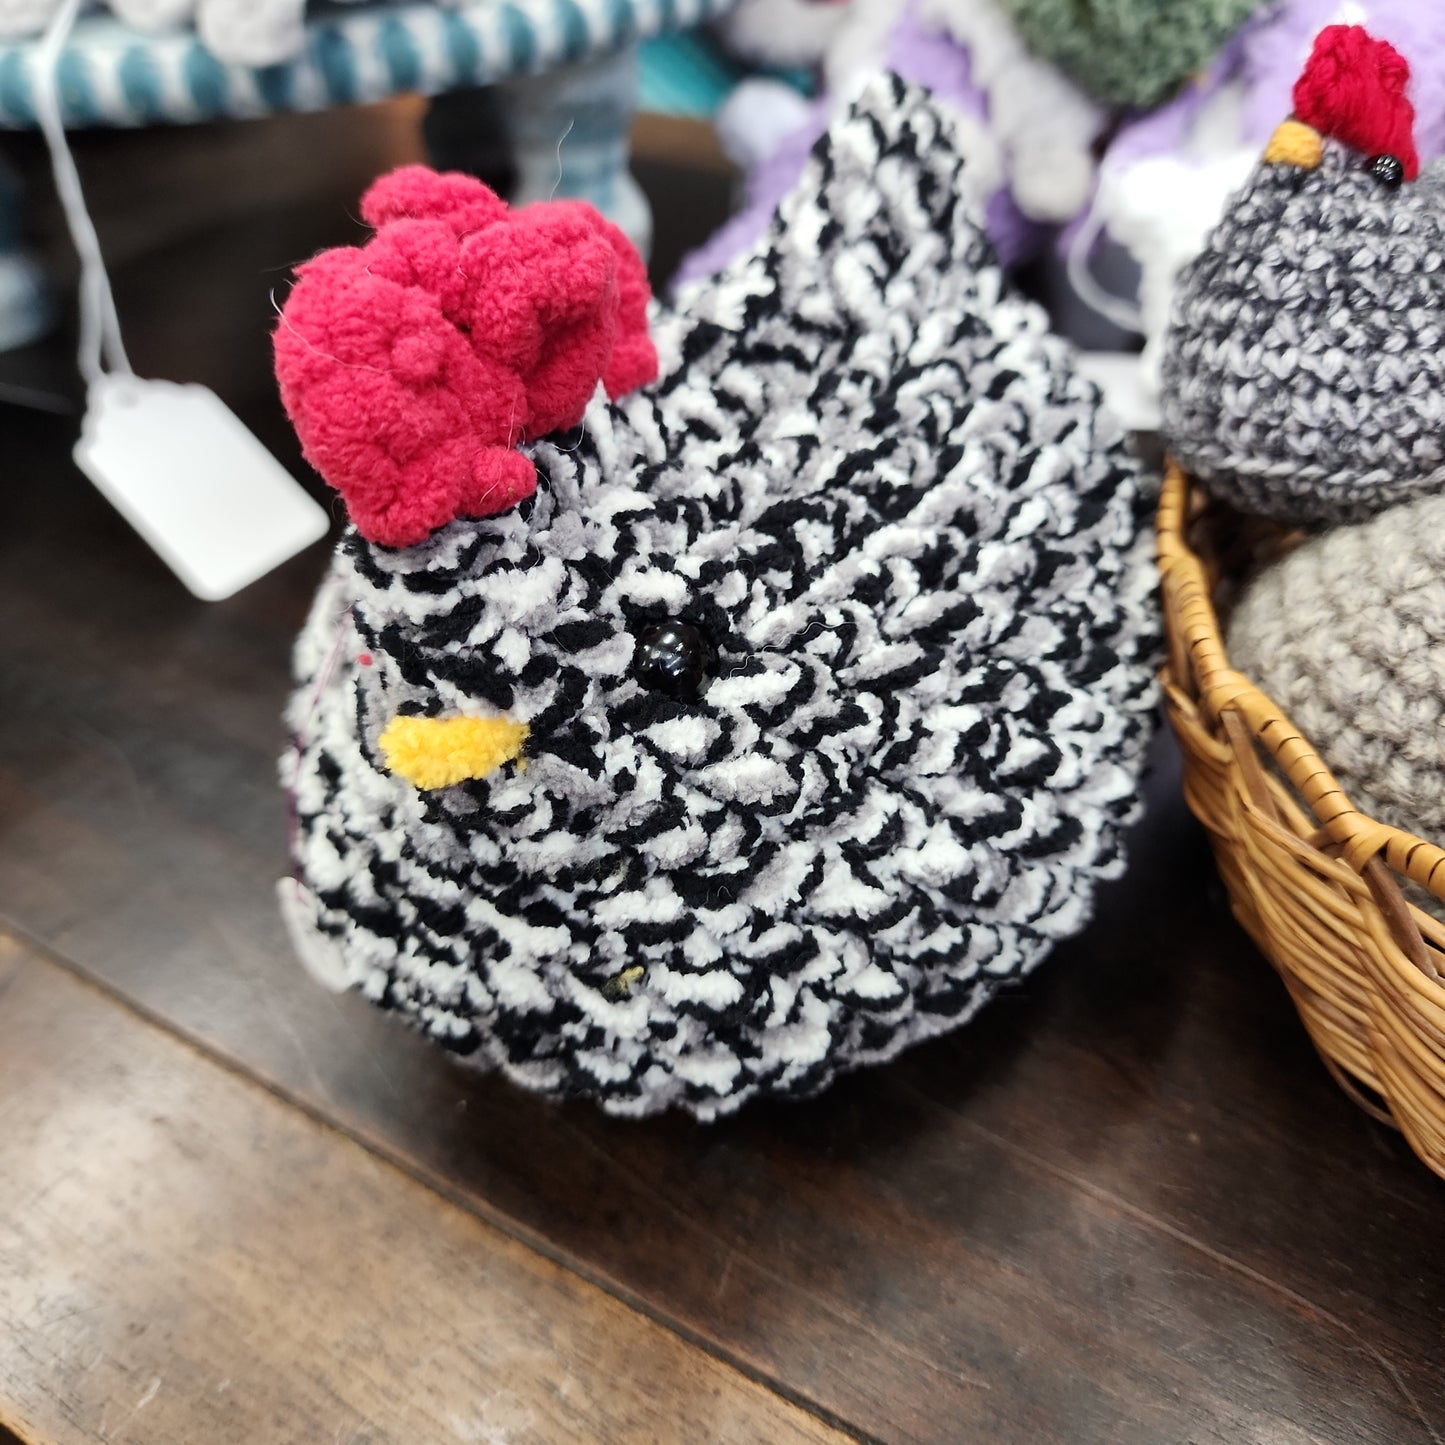 Crochet Creatures - Chickens